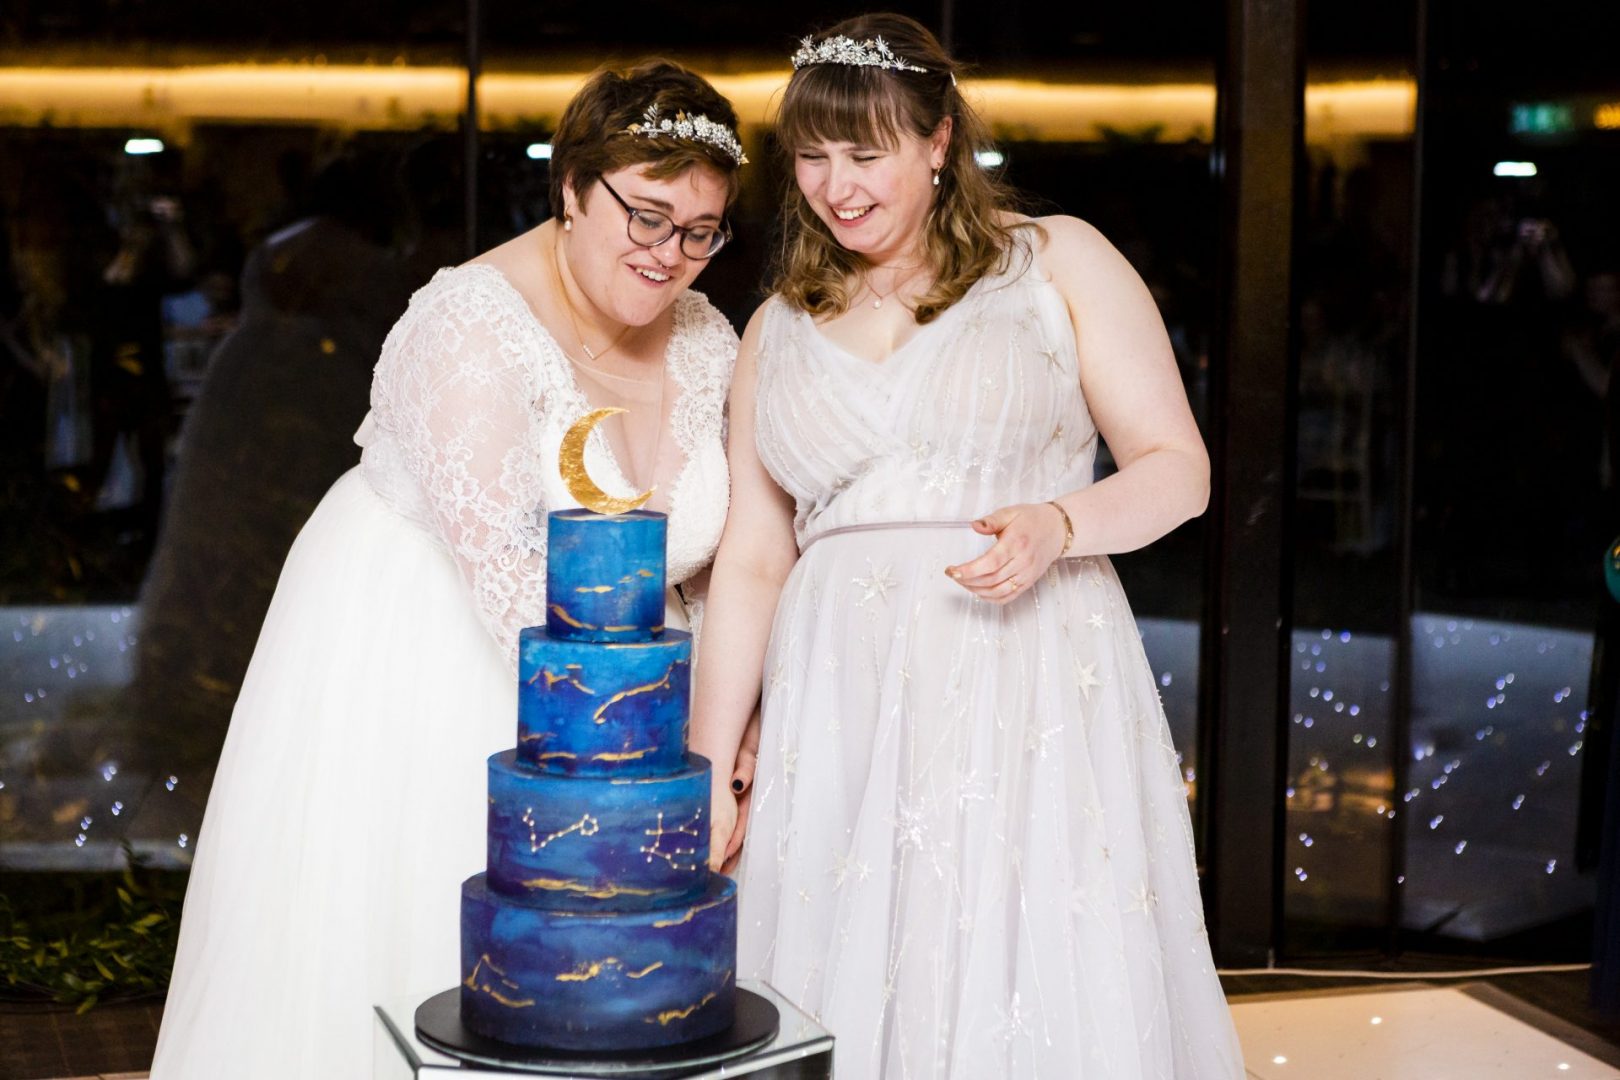 Two brides cut their wedding cake